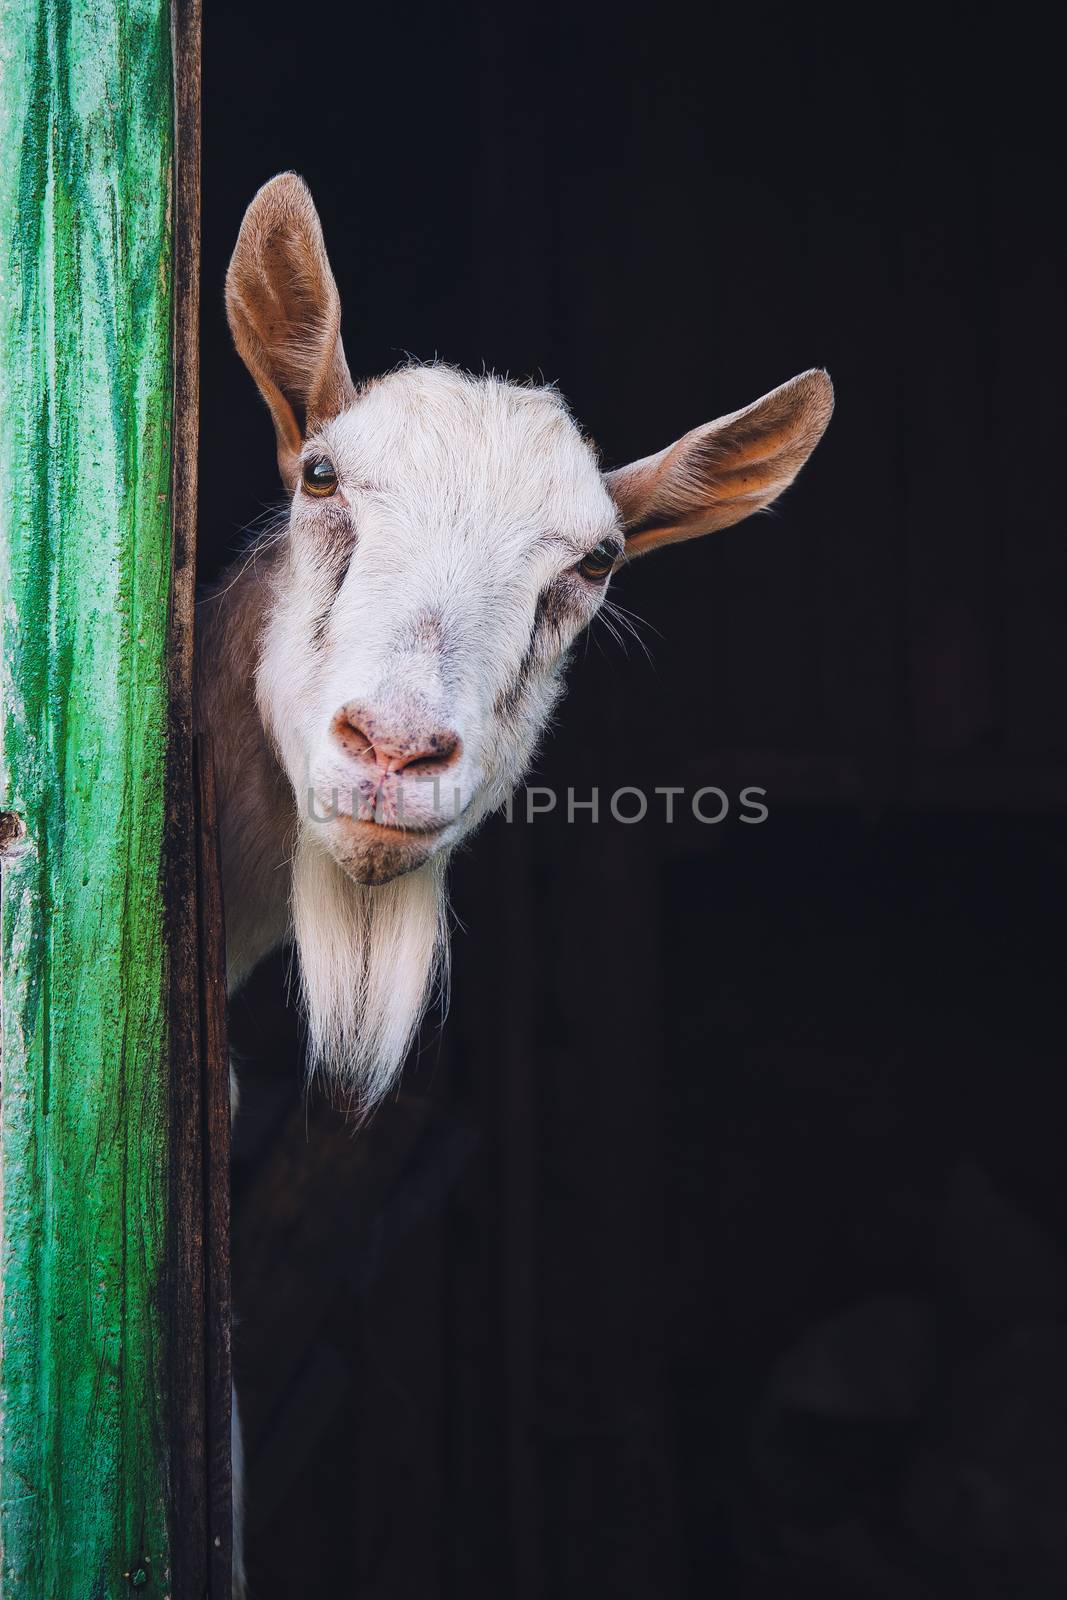 curious hornless goat by zhu_zhu